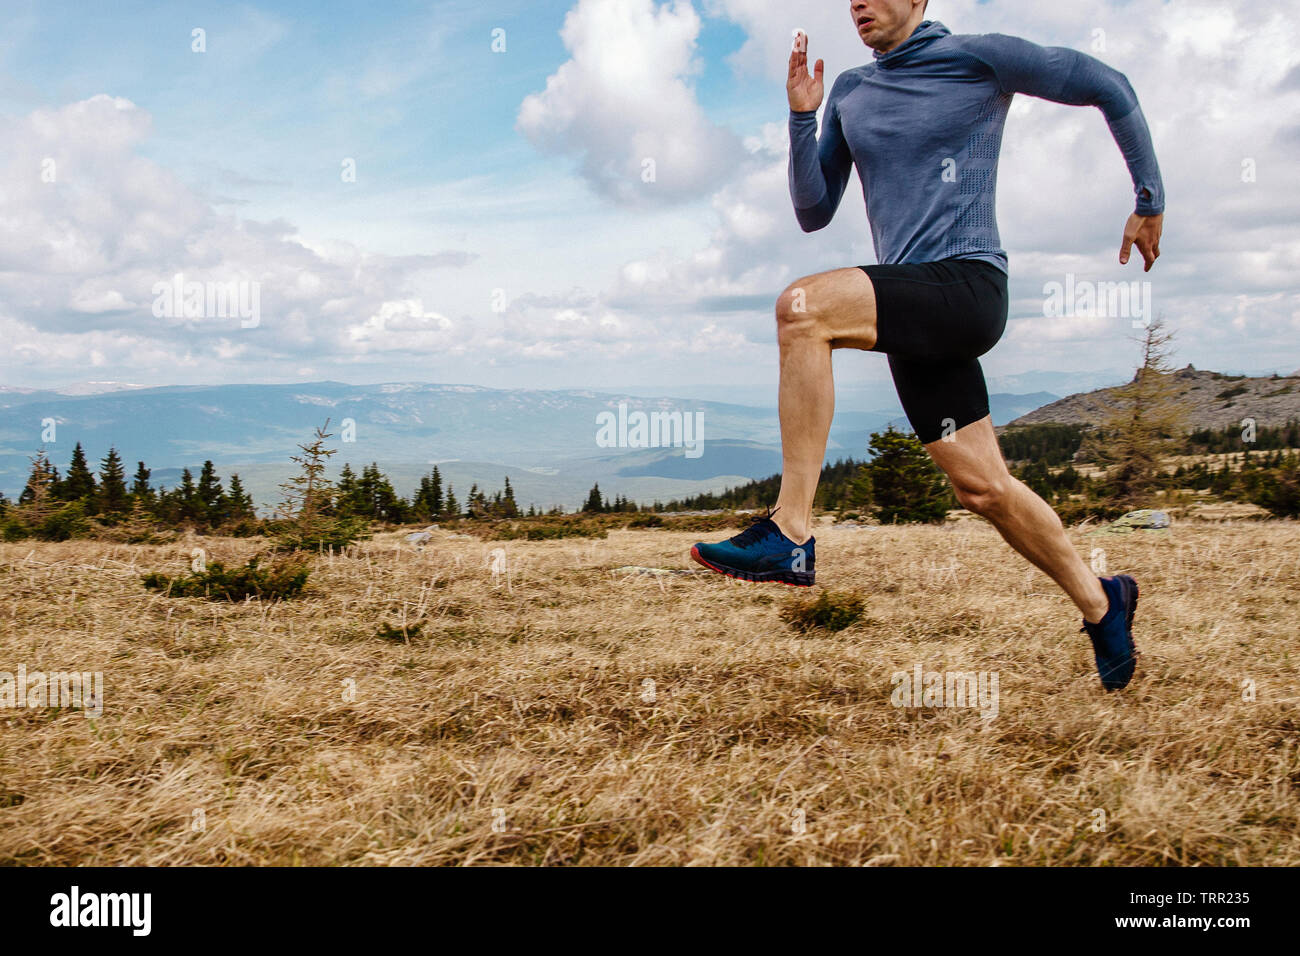 Scorrimento veloce sul sentiero di montagna in estate outdoor uomo atleta runner Foto Stock